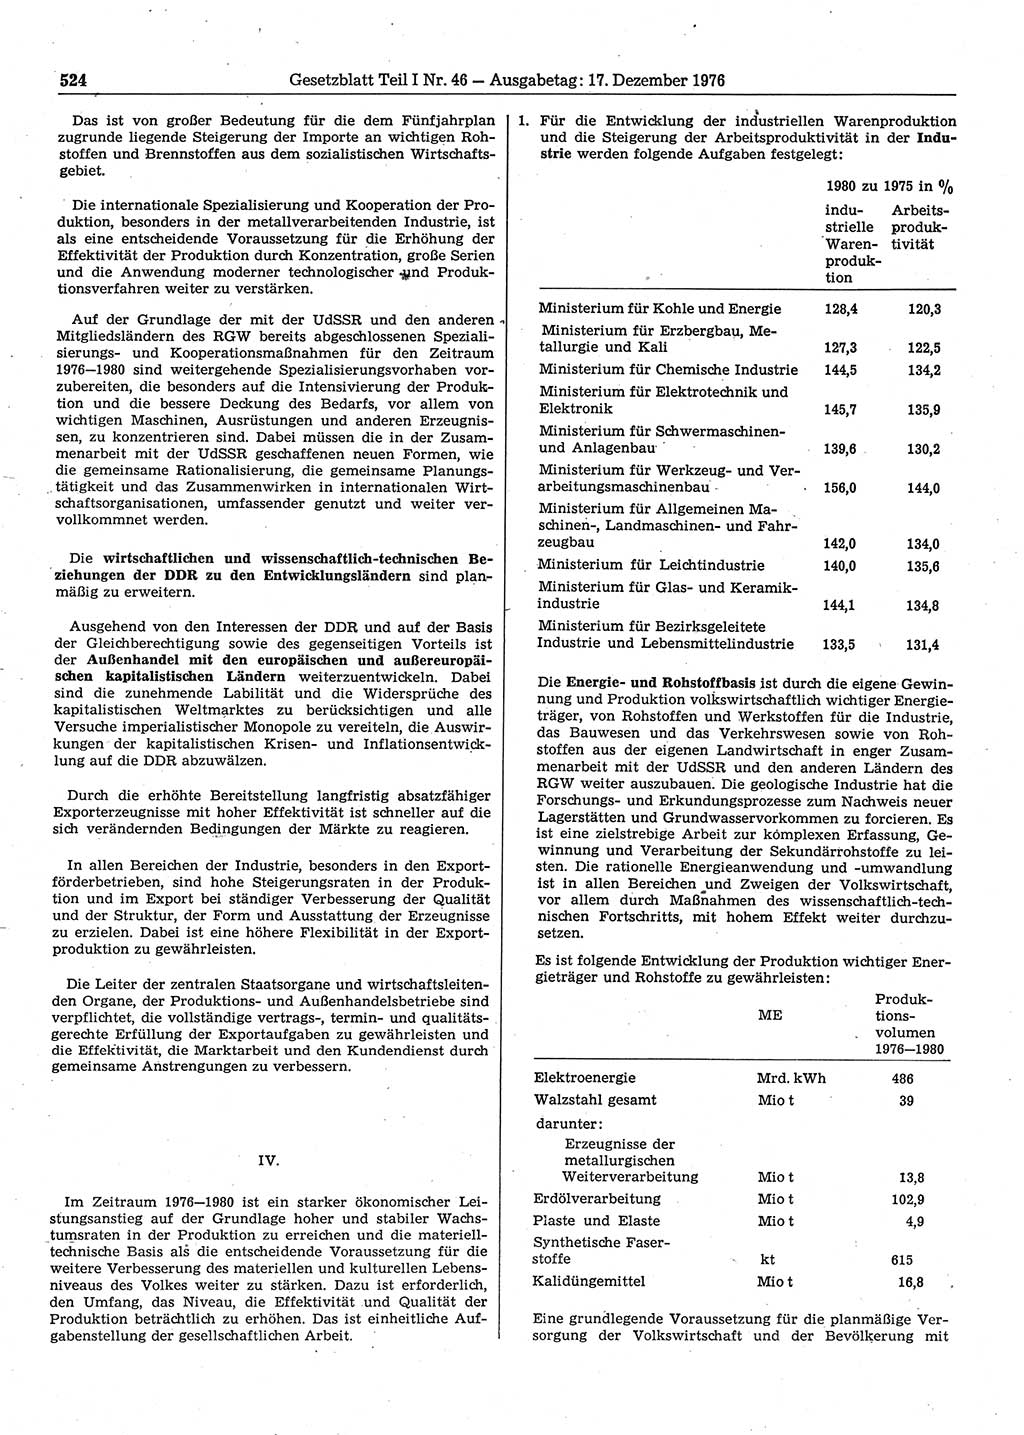 Gesetzblatt (GBl.) der Deutschen Demokratischen Republik (DDR) Teil Ⅰ 1976, Seite 524 (GBl. DDR Ⅰ 1976, S. 524)